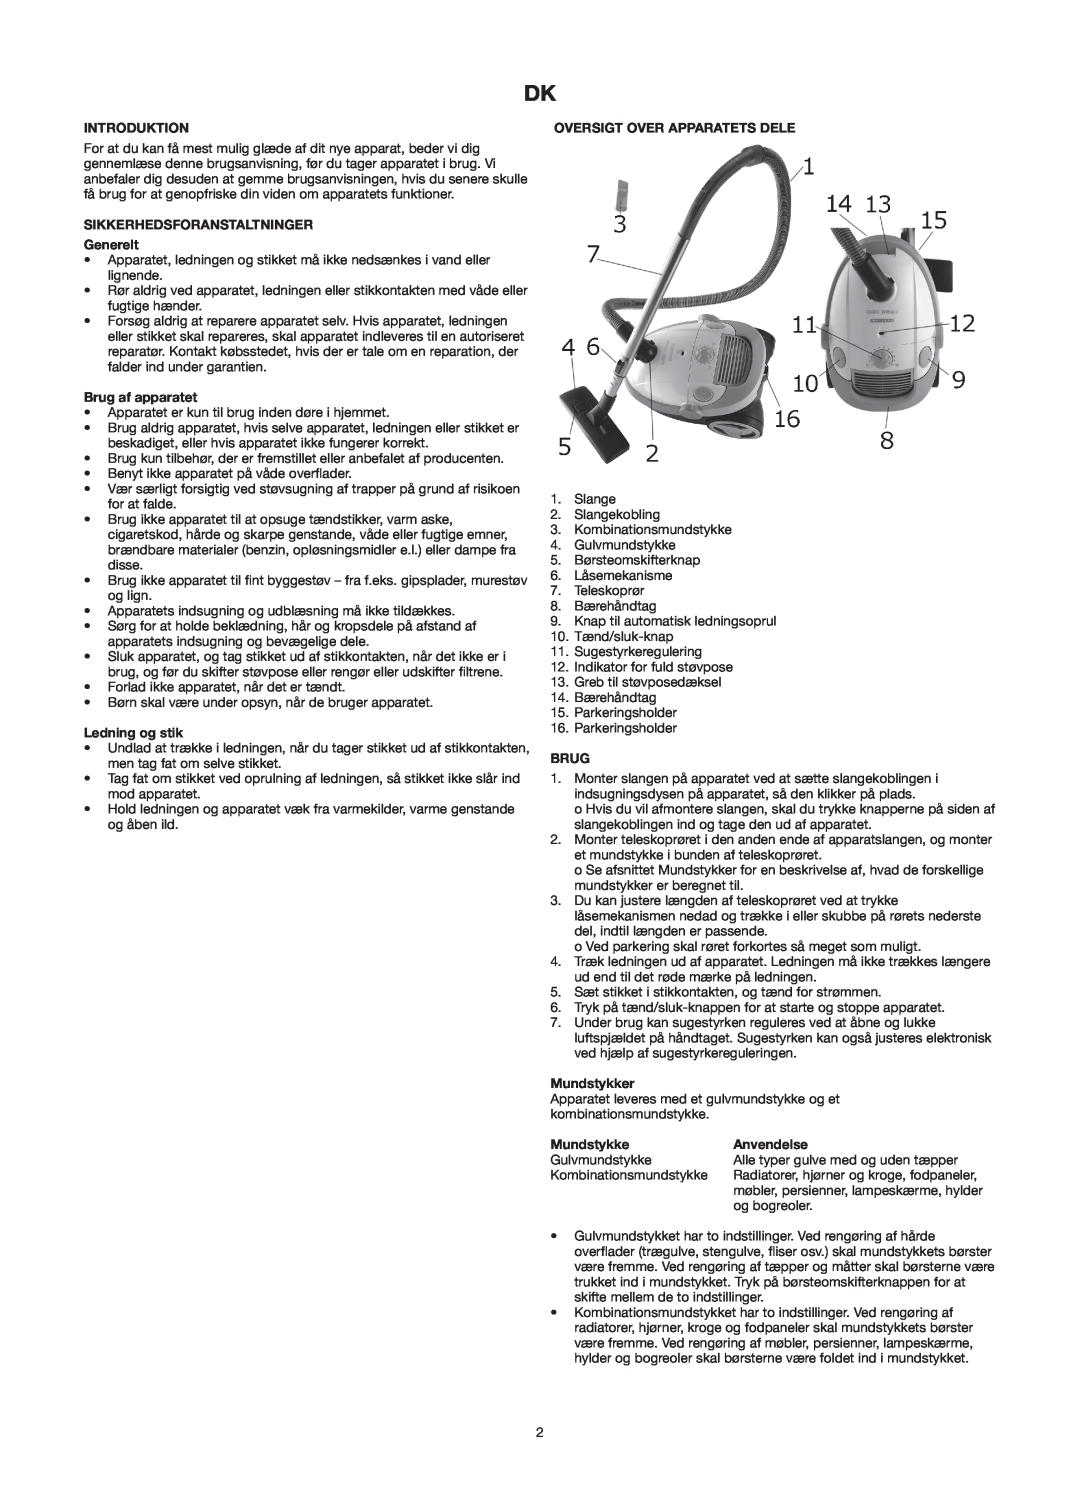 Melissa 640-121 manual Introduktion, SIKKERHEDSFORANSTALTNINGER Generelt, Brug af apparatet, Ledning og stik, Mundstykker 